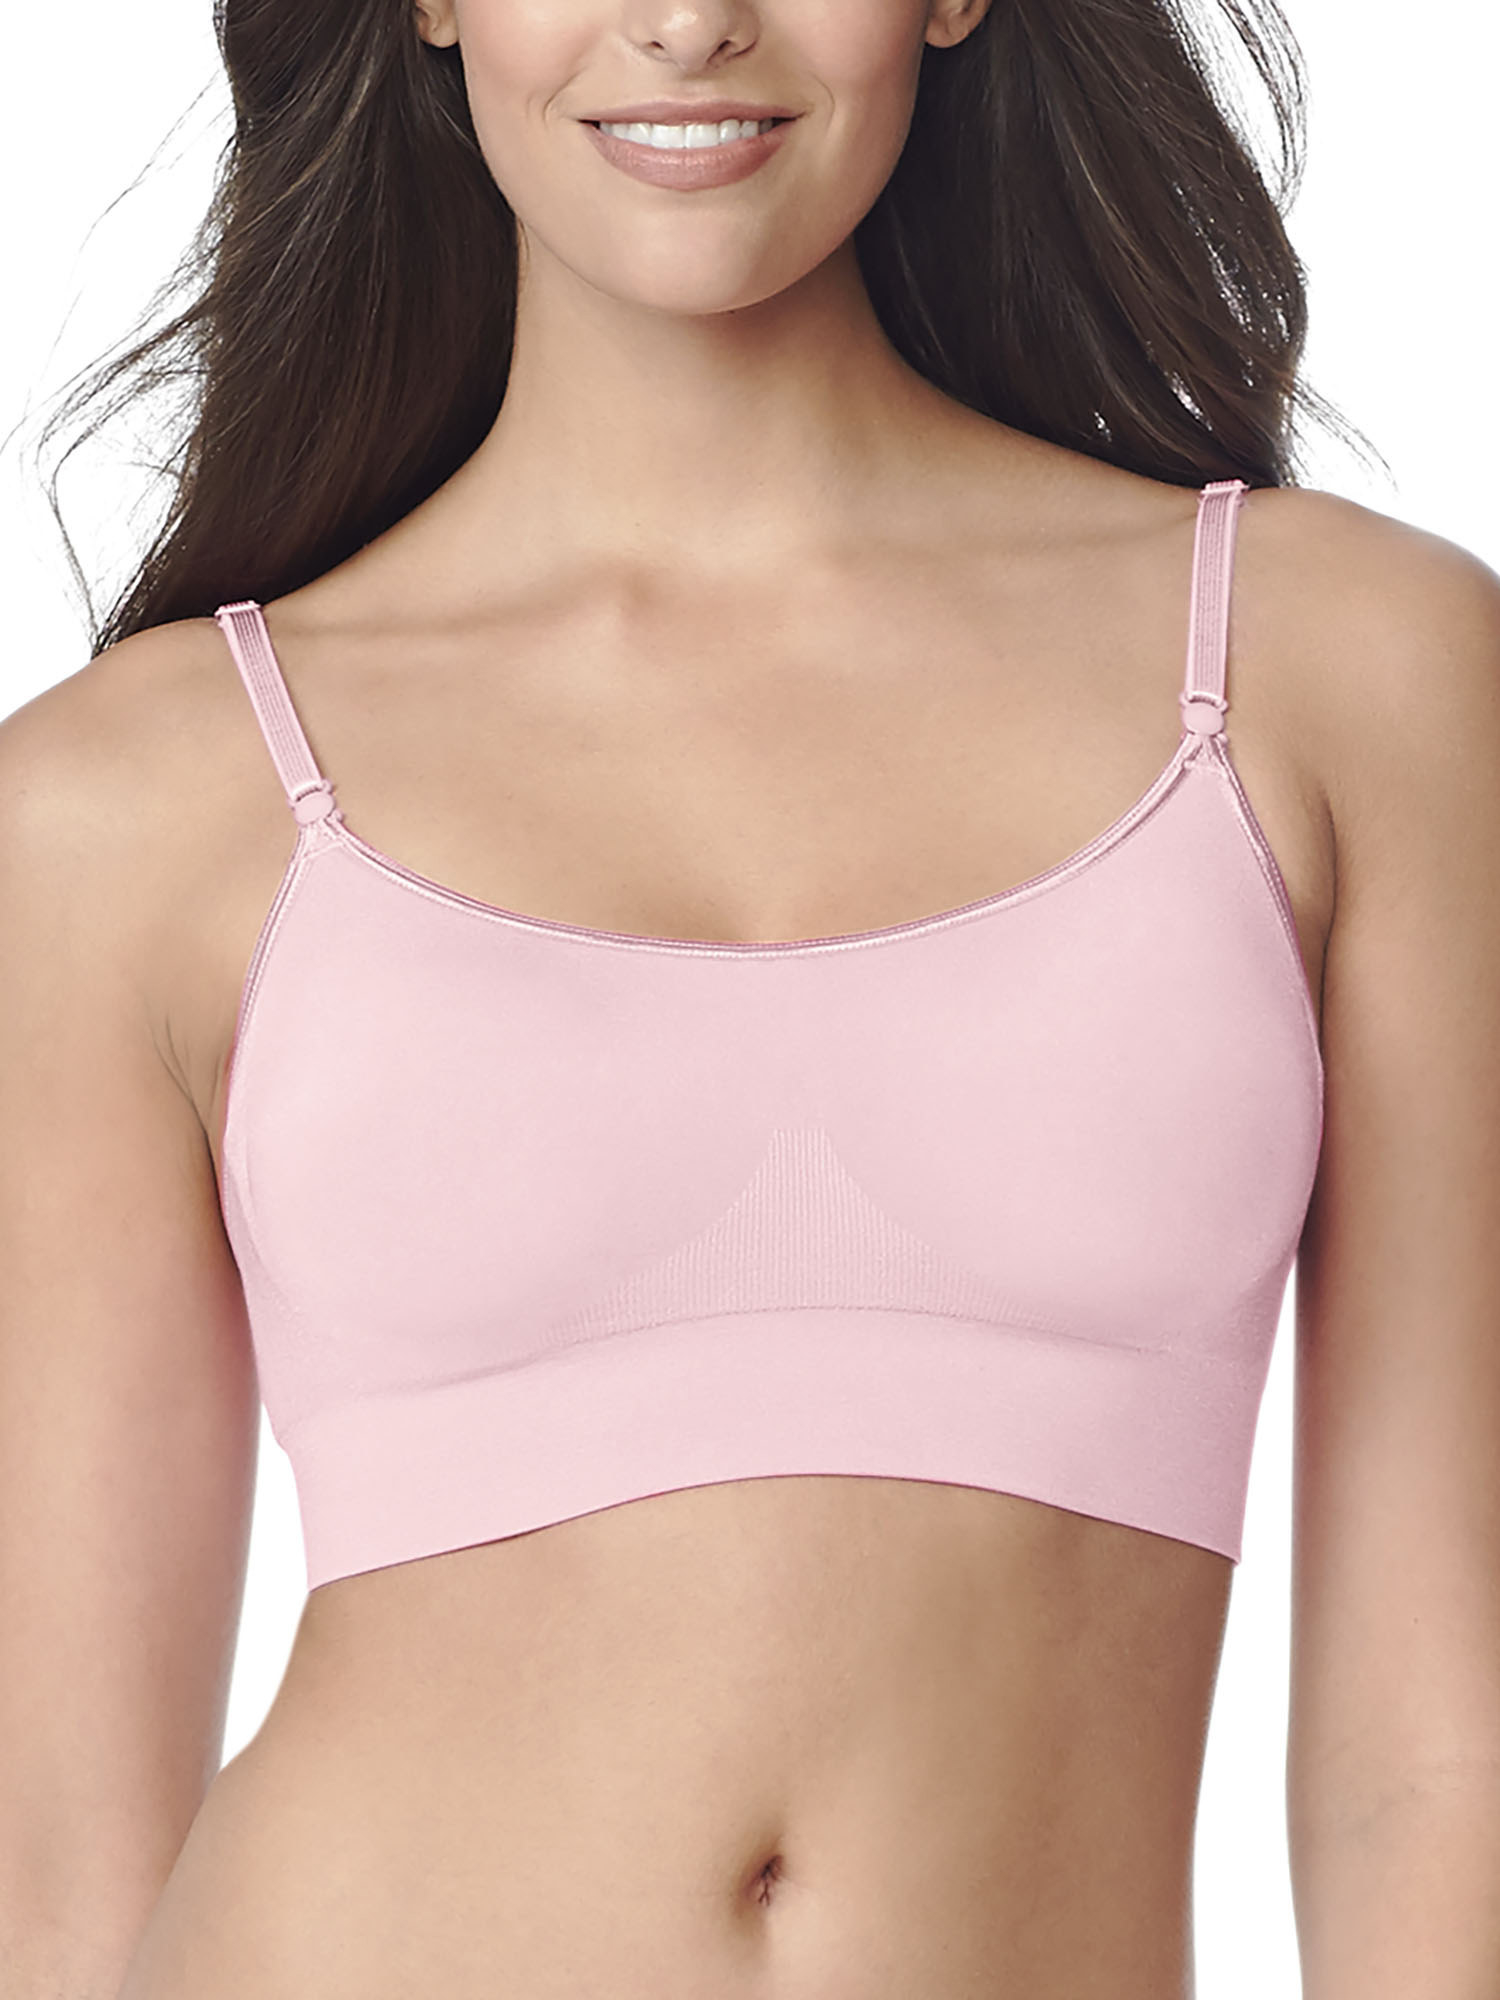 Model wearing the pink bra